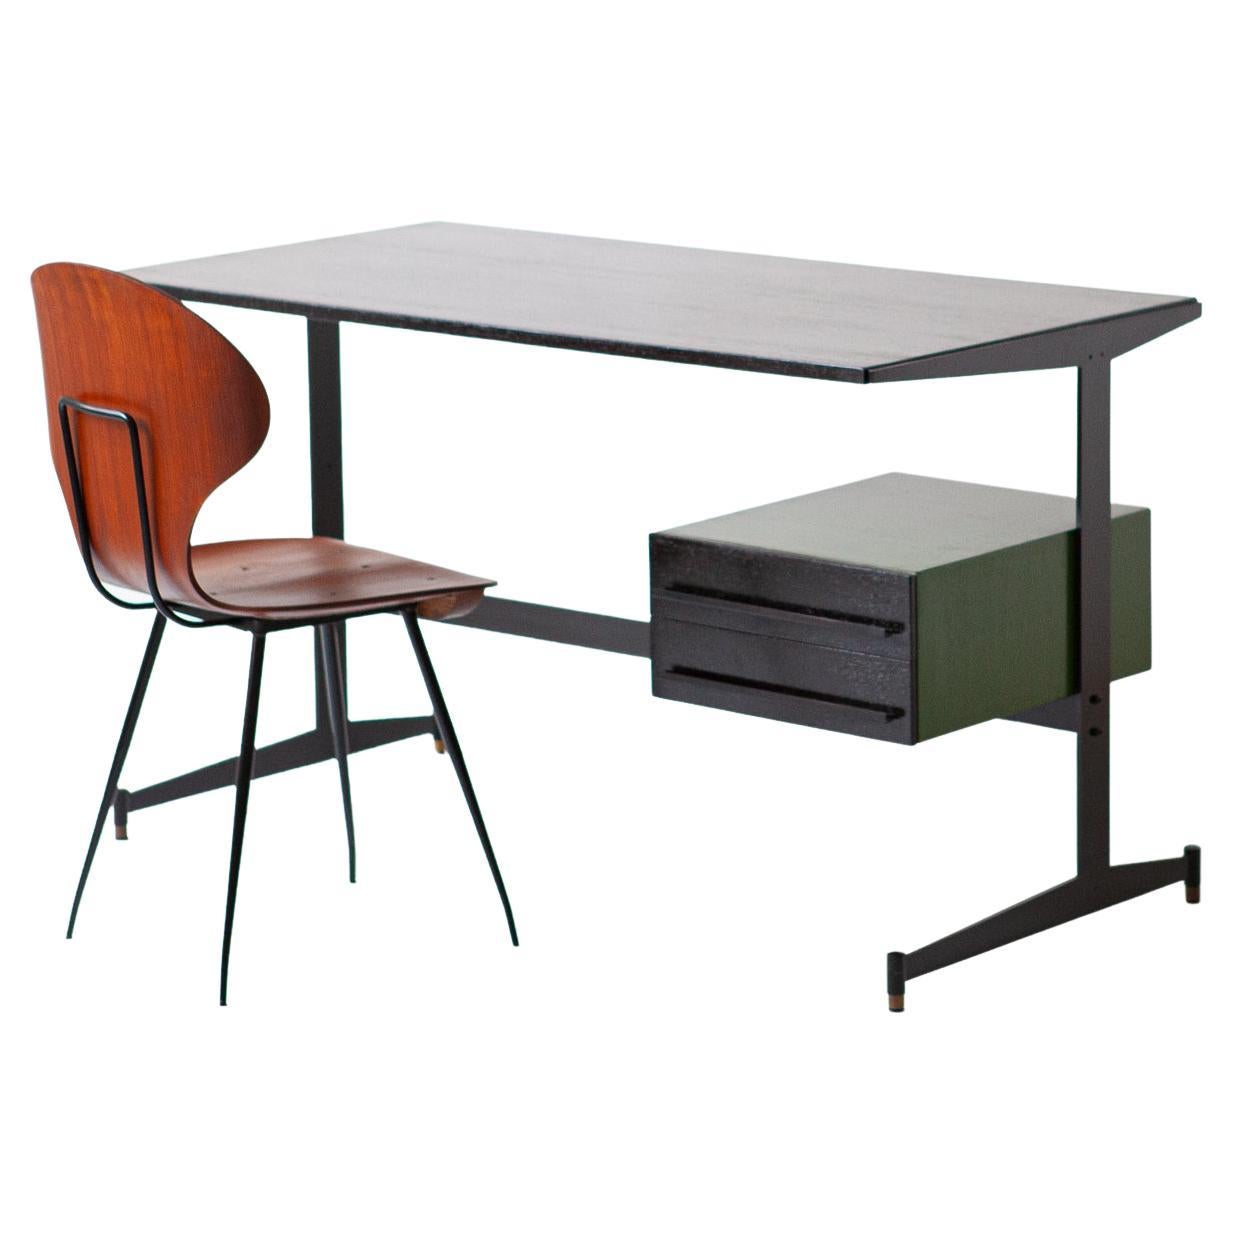 1960er Jahre Italienischer neu gestalteter Schreibtisch mit passendem Carlo Ratti Stuhlset

Wir haben diesen alten italienischen Schreibtisch aus den 60er Jahren komplett restauriert und auch einige Umgestaltungen vorgenommen.
Die Kommode aus